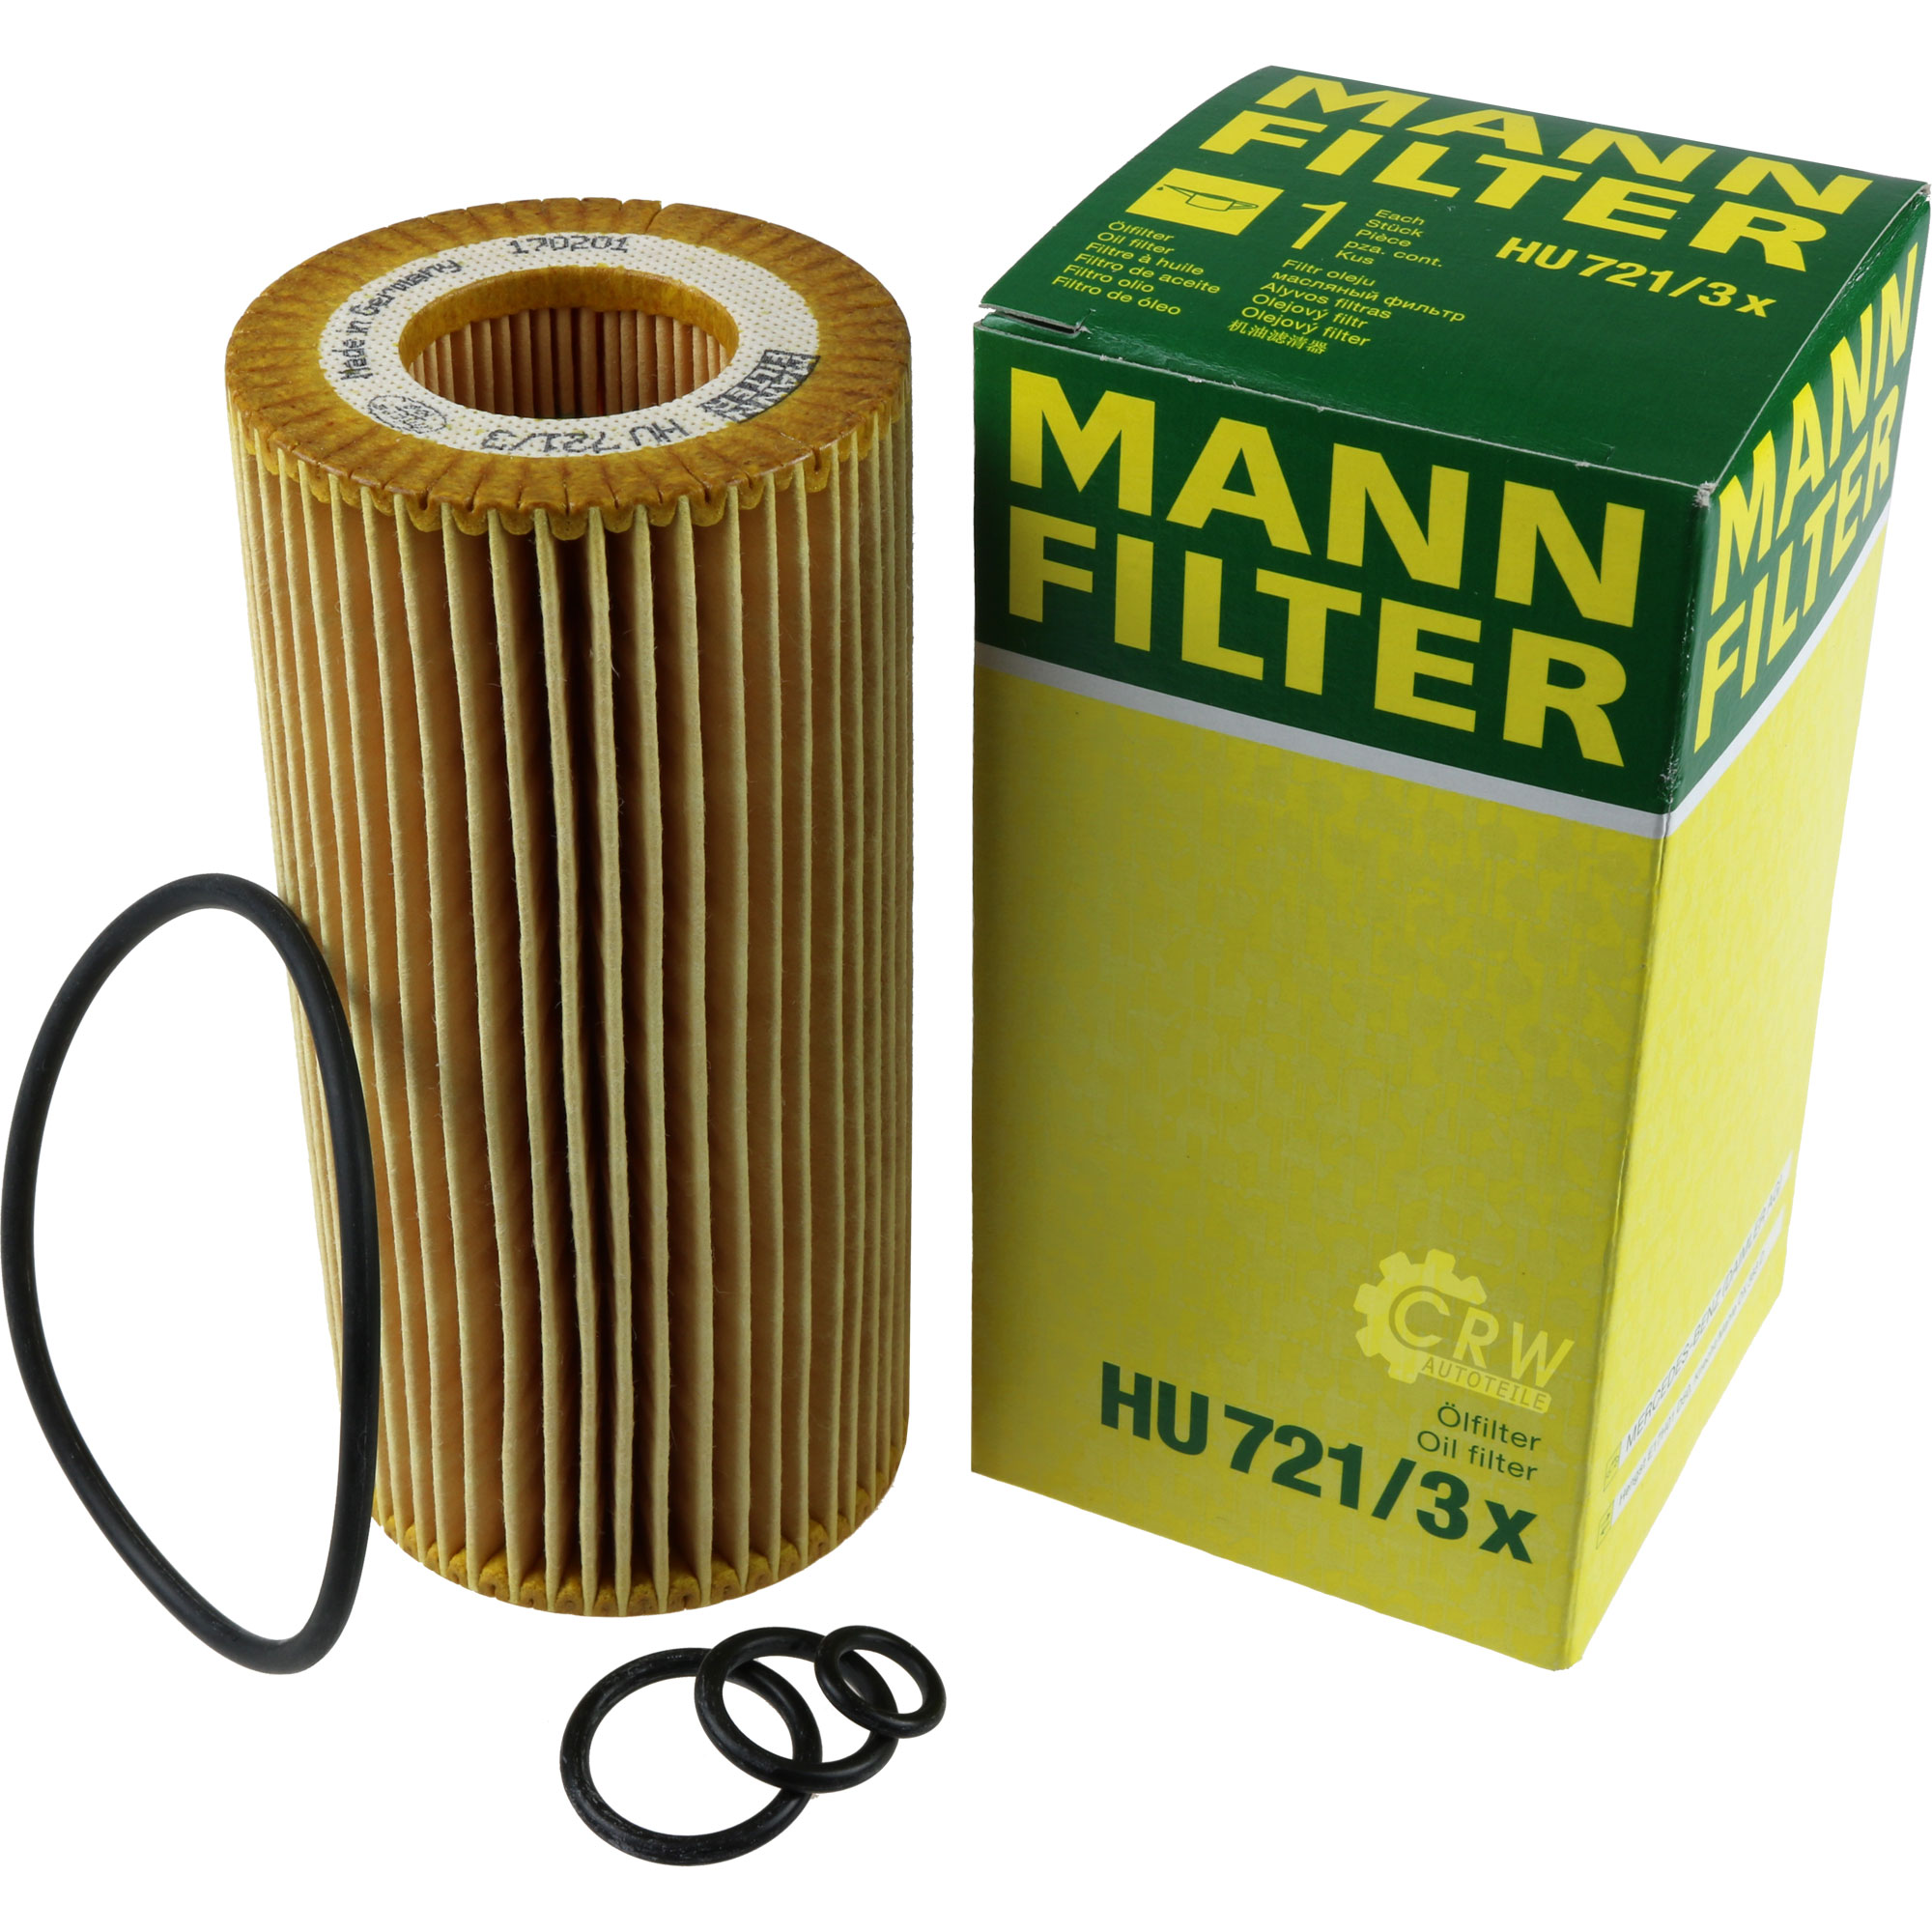 MANN-FILTER Ölfilter HU 721/3 x Oil Filter